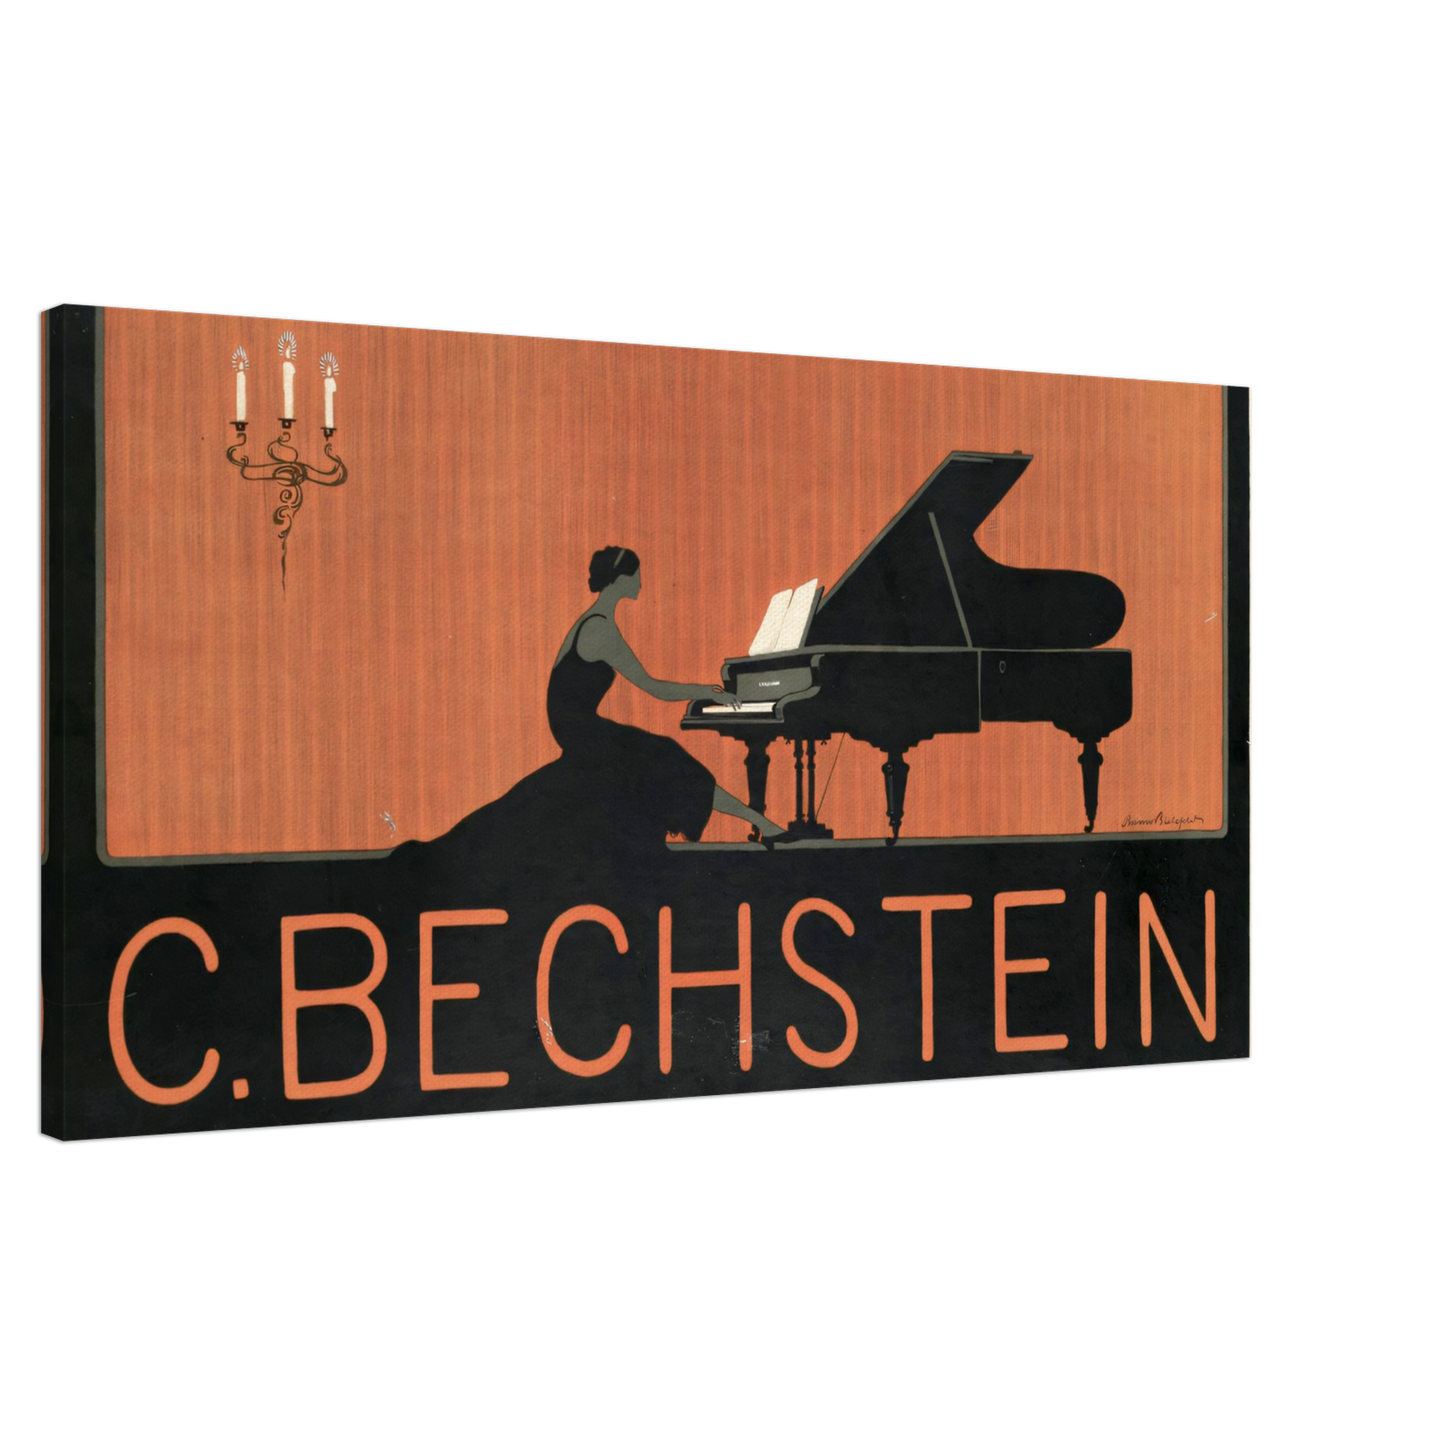 Canvas Bechstein - Posterify